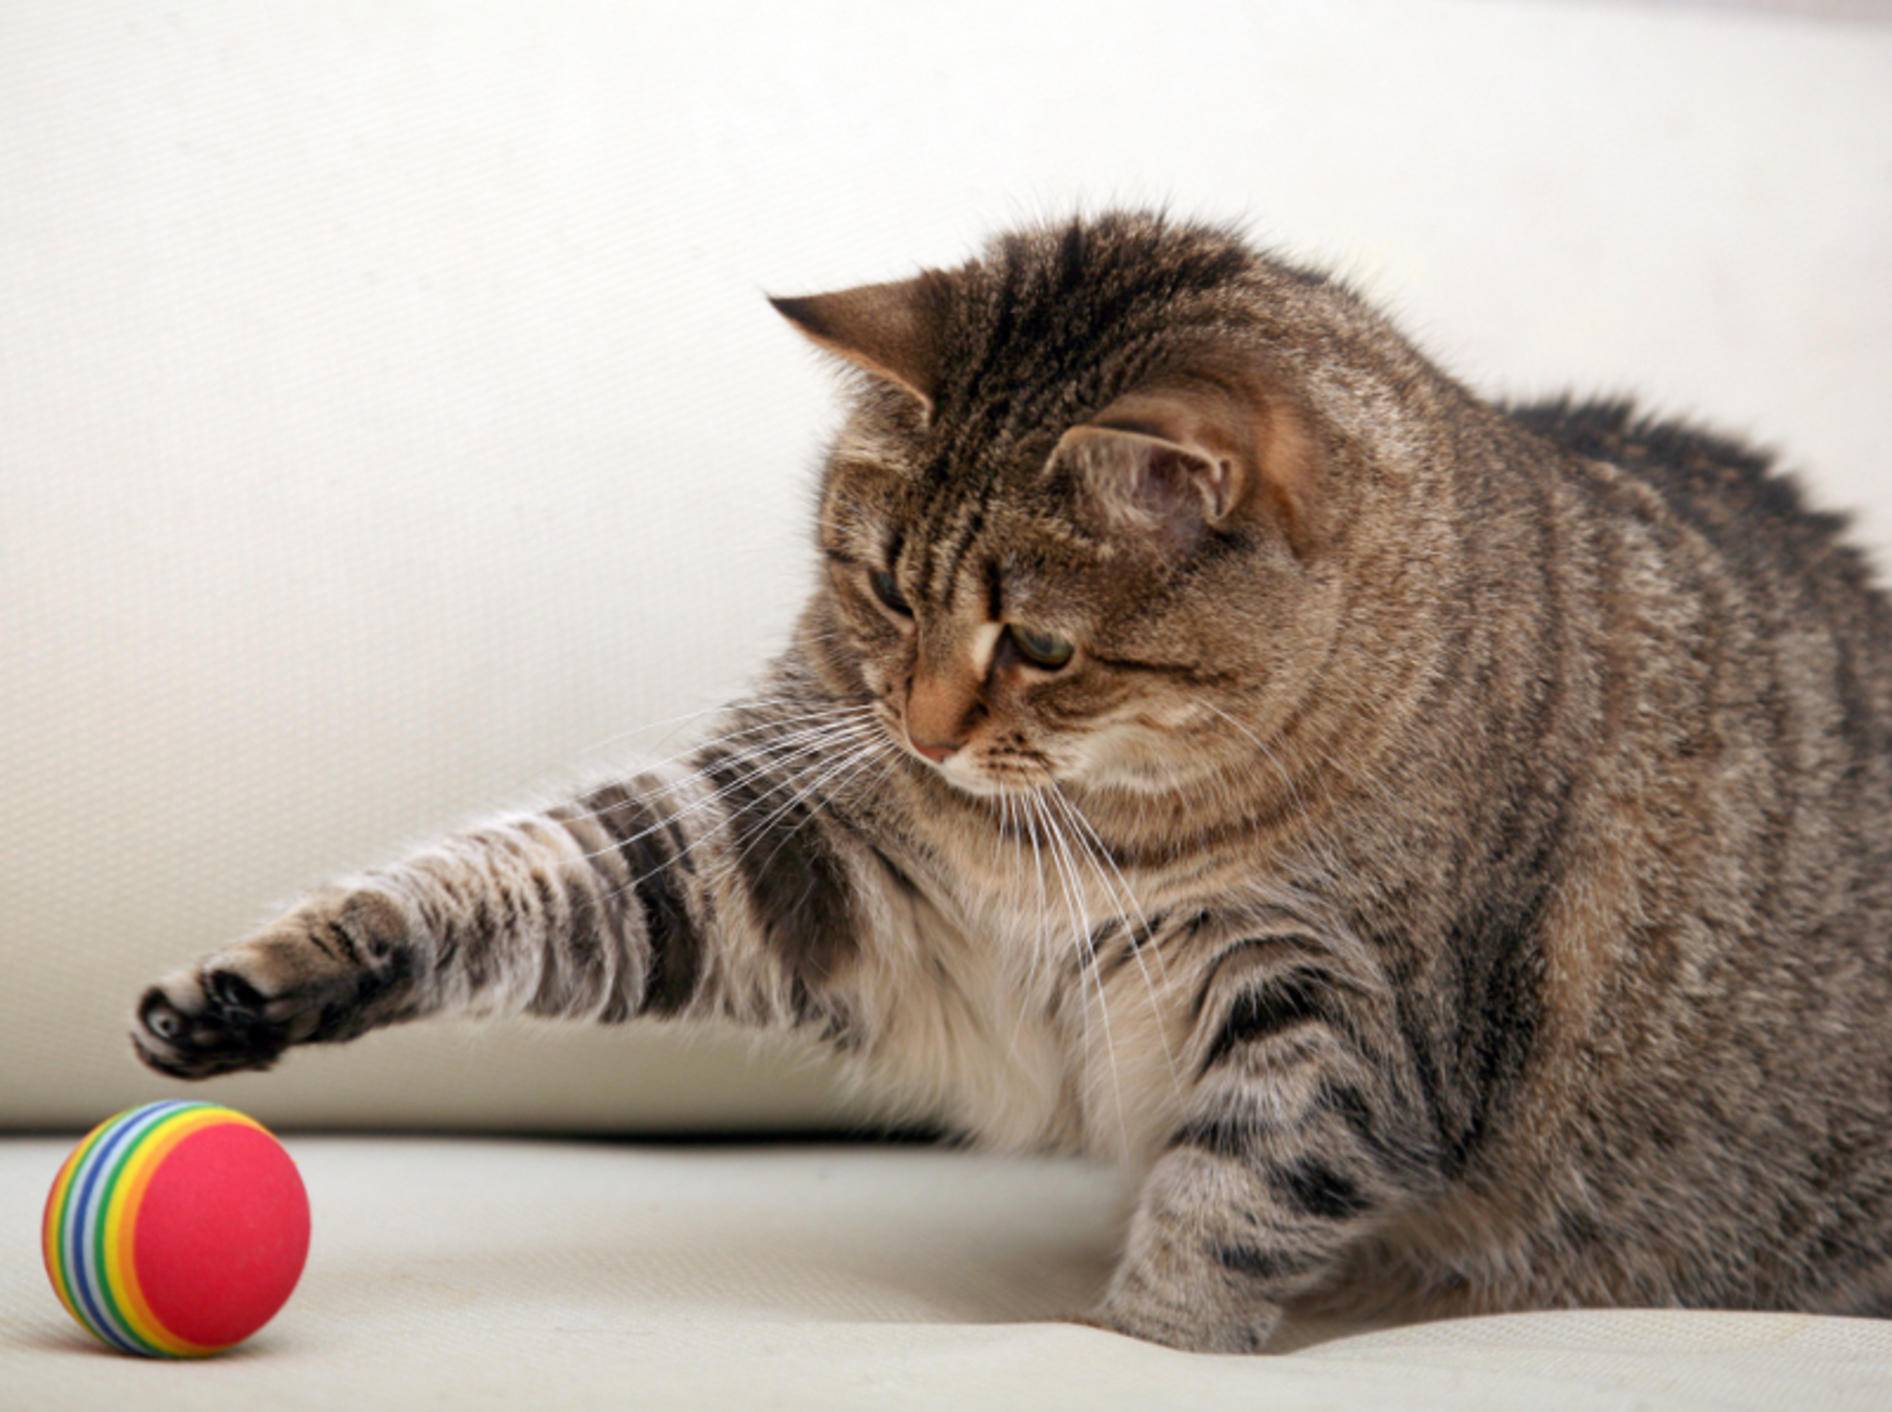 Katzenspielzeug sollte sicher sein, damit risikofreier Spaß garantiert ist – Shutterstock / Onishchenko Natalya